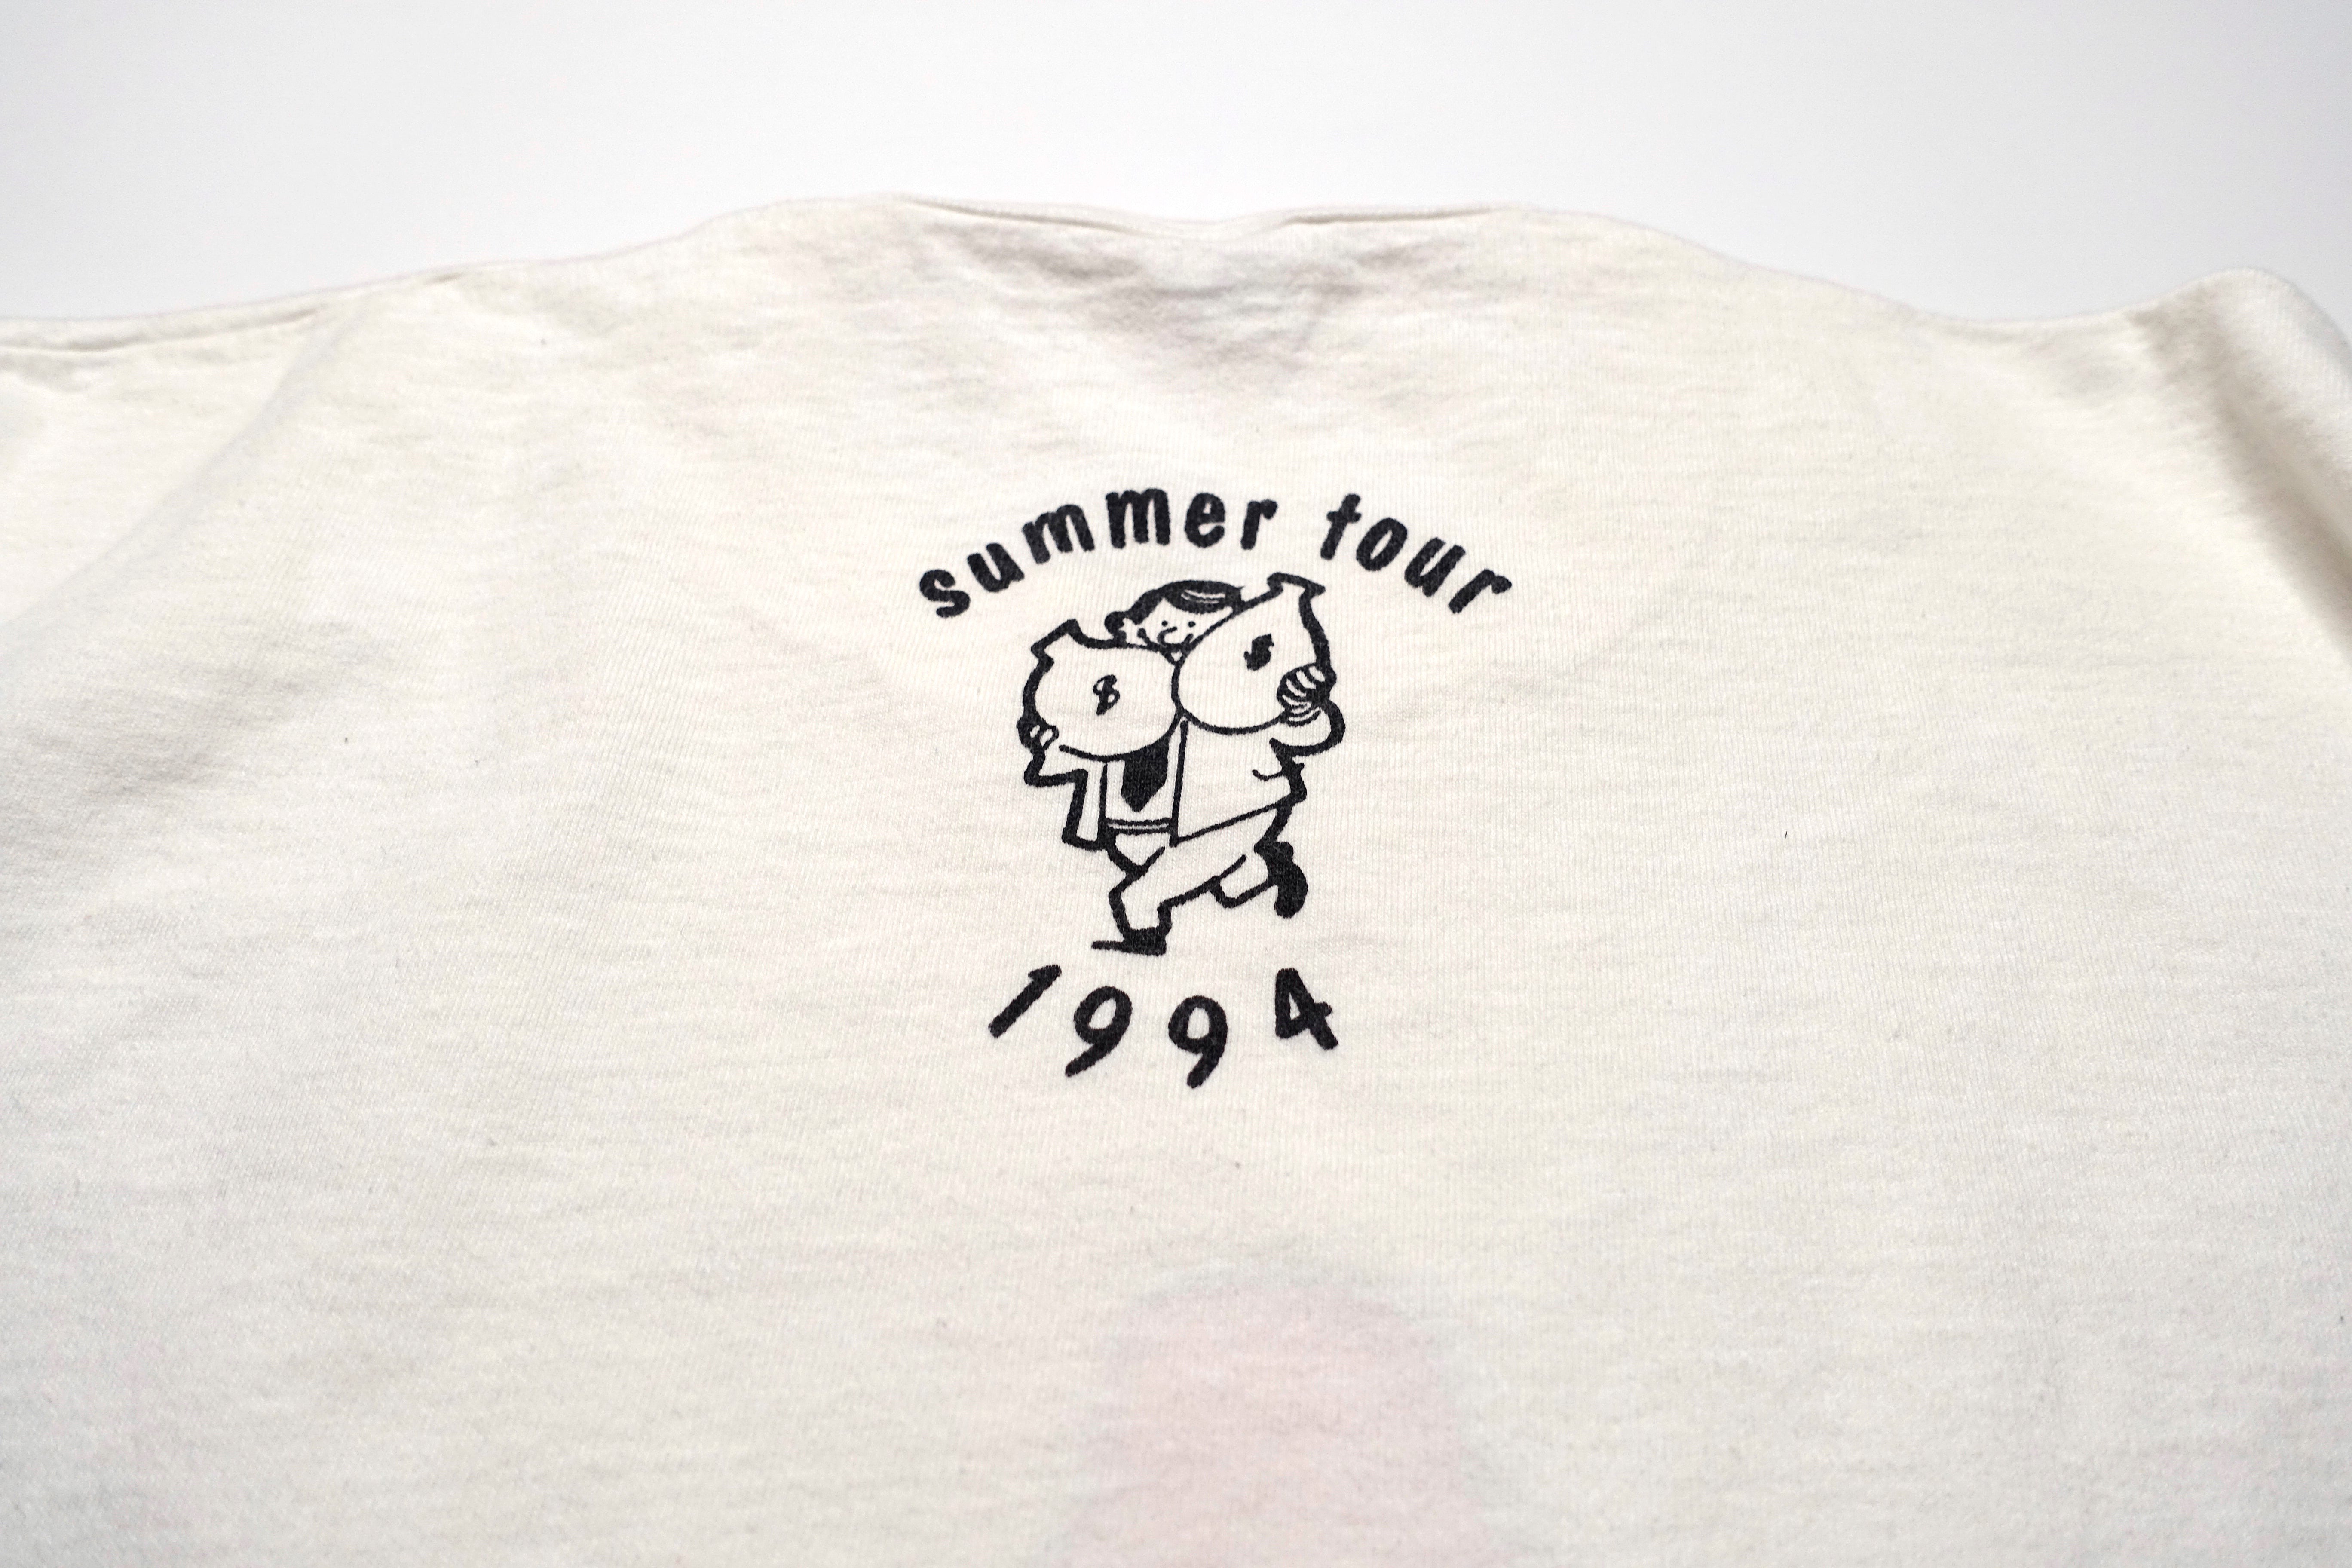 Lifetime - Rocket Pop / Summer 1994 Tour Shirt Size XL